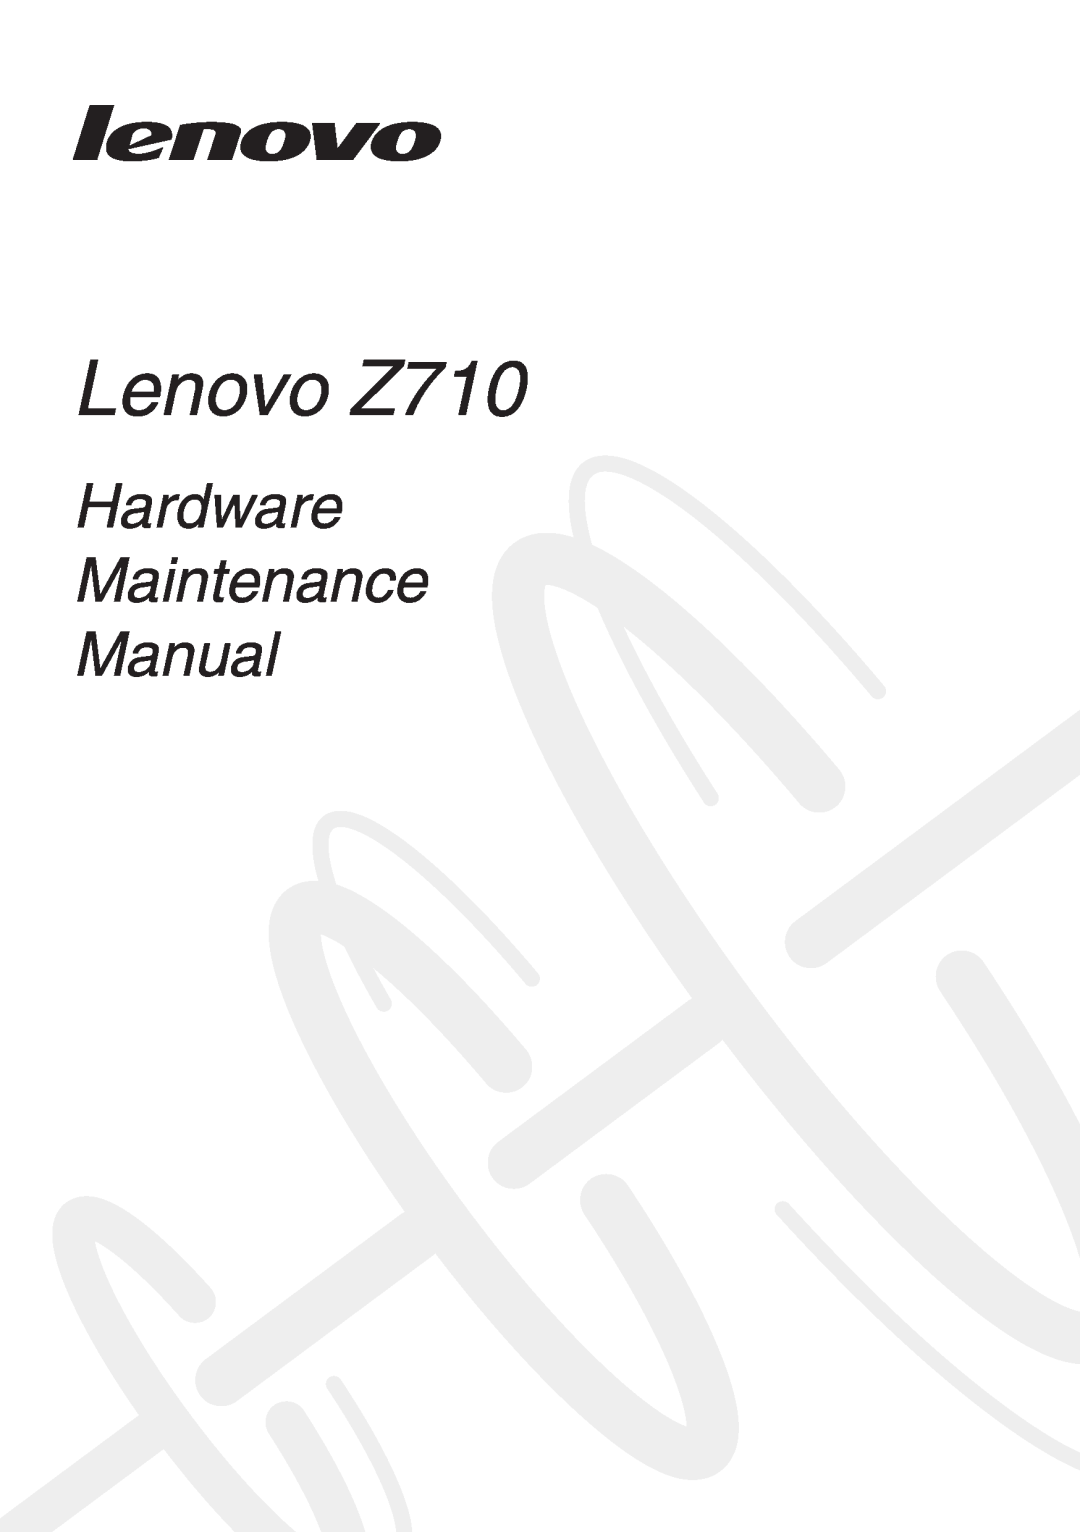 Lenovo manual Lenovo Z710, Hardware Maintenance Manual 